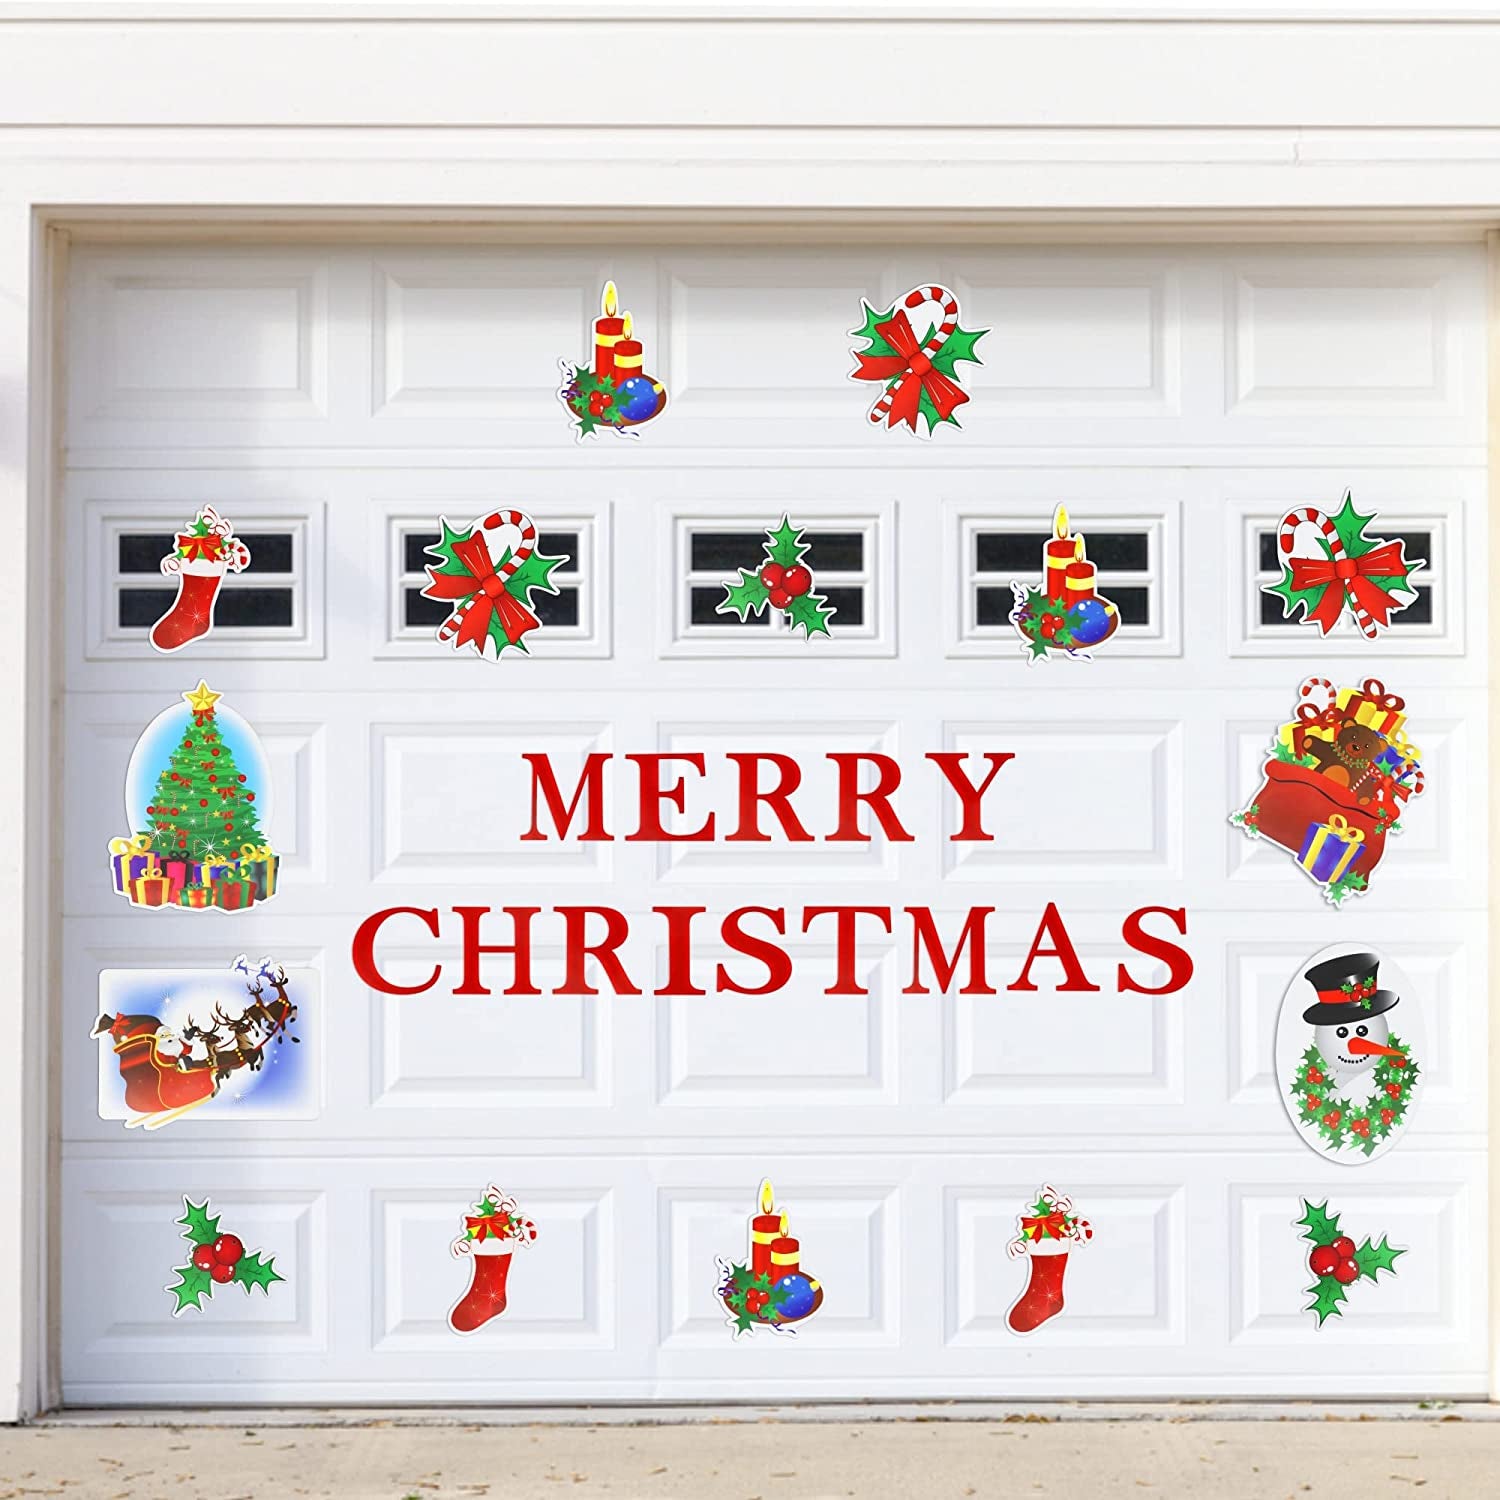 Tribello, Merry Christmas Garage Door Magnets - 30Pcs All in One Garage Door Christmas Decorations Set - Weather Resistant - Christmas Garage Door Decorations for Xmas, Holiday and Christmas Decor